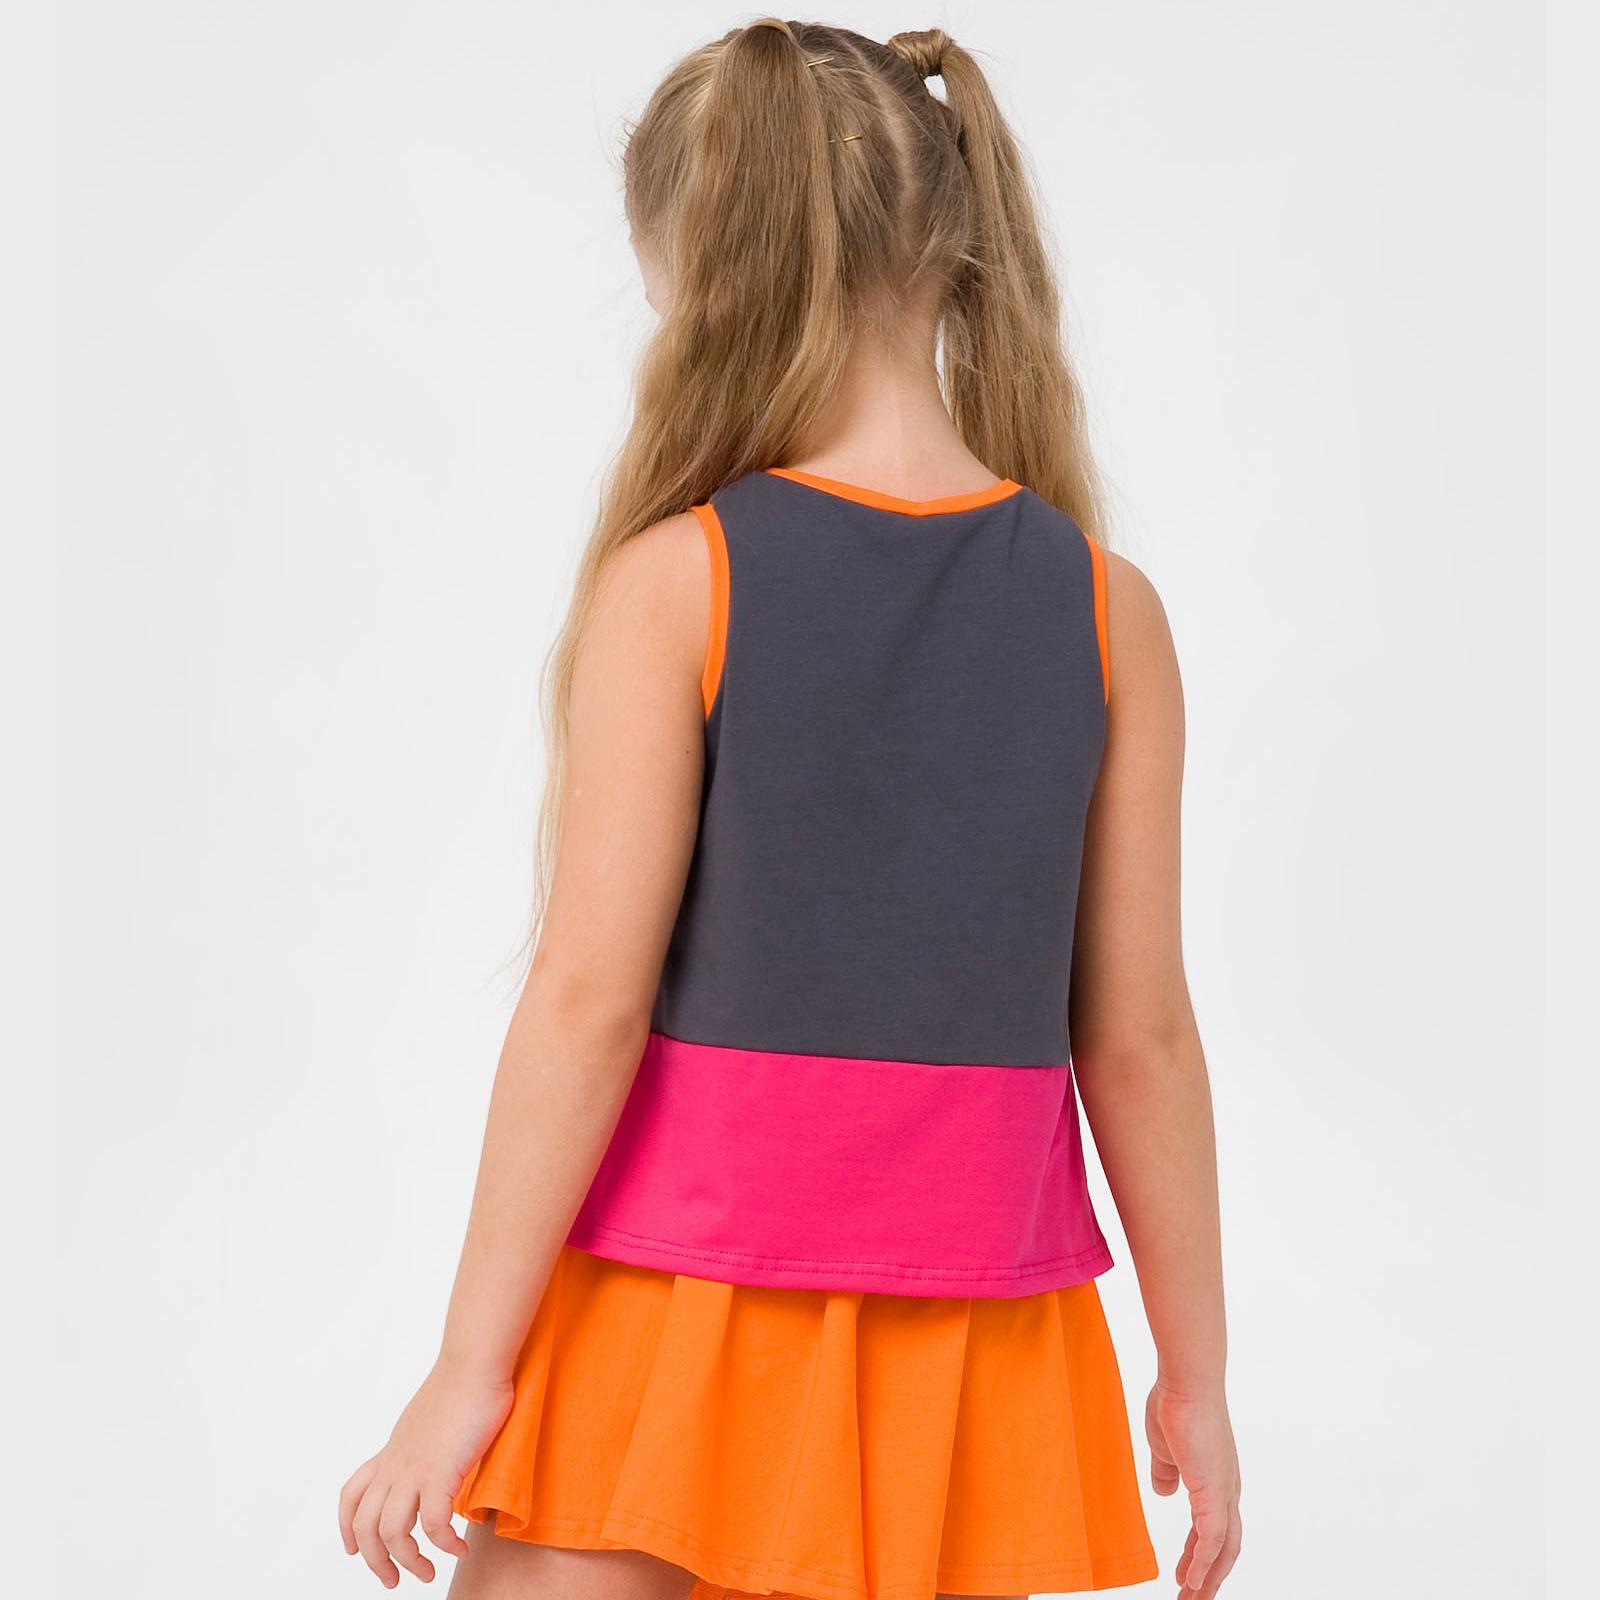 Майка-блуза для дівчинки Рожевий цитрус, цитрус (110651), Smil (Смил)